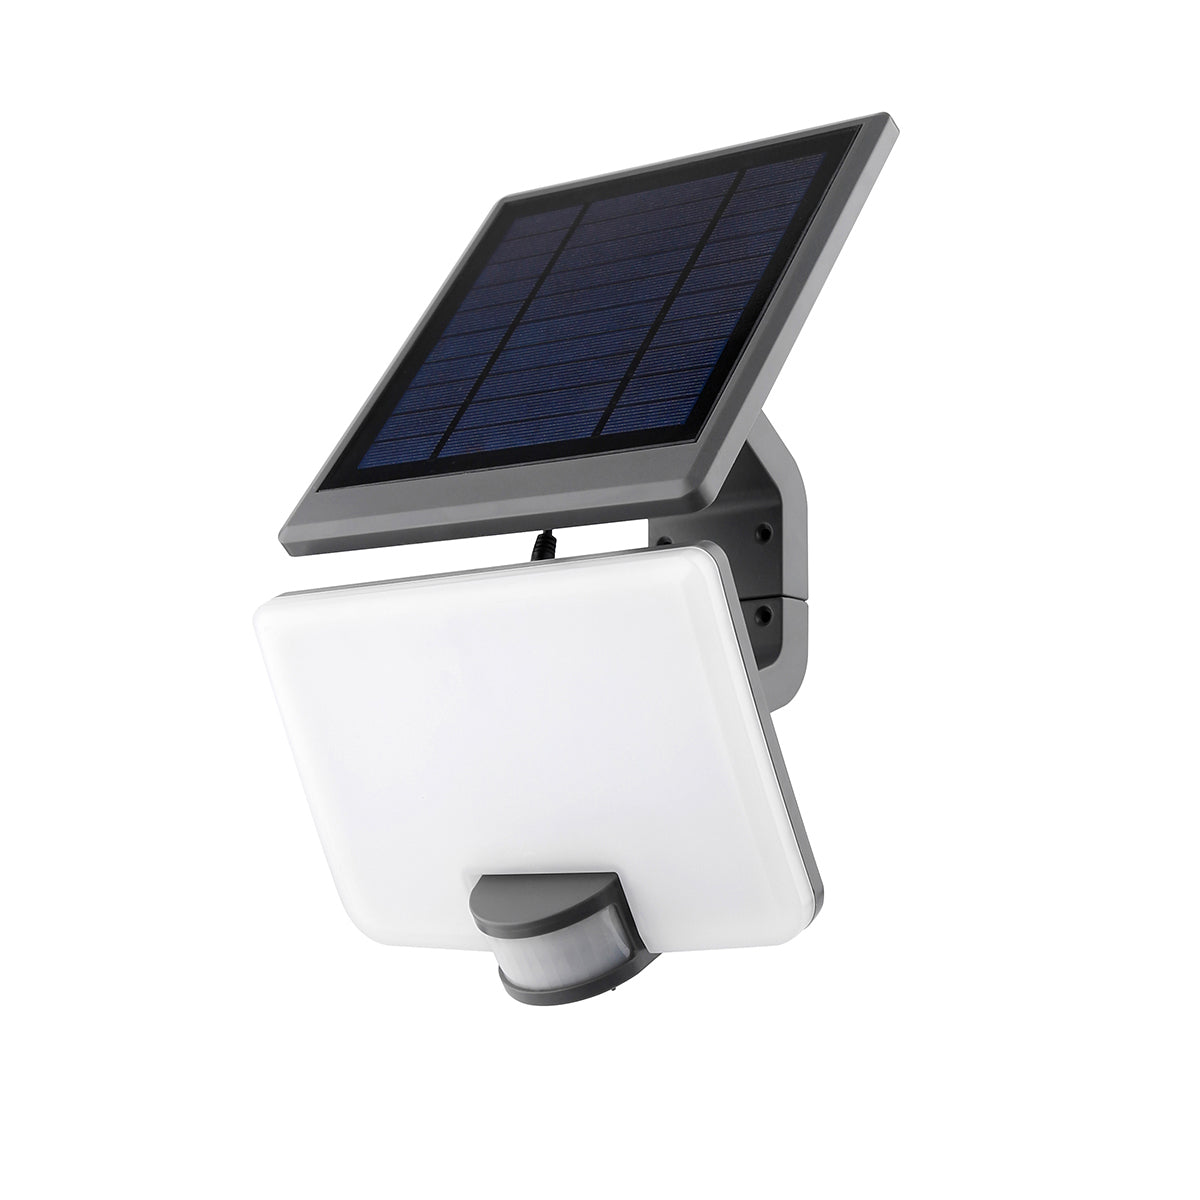 Proiettore per esterni Ulysse con pannello solare e sensore di movimento inclusi.